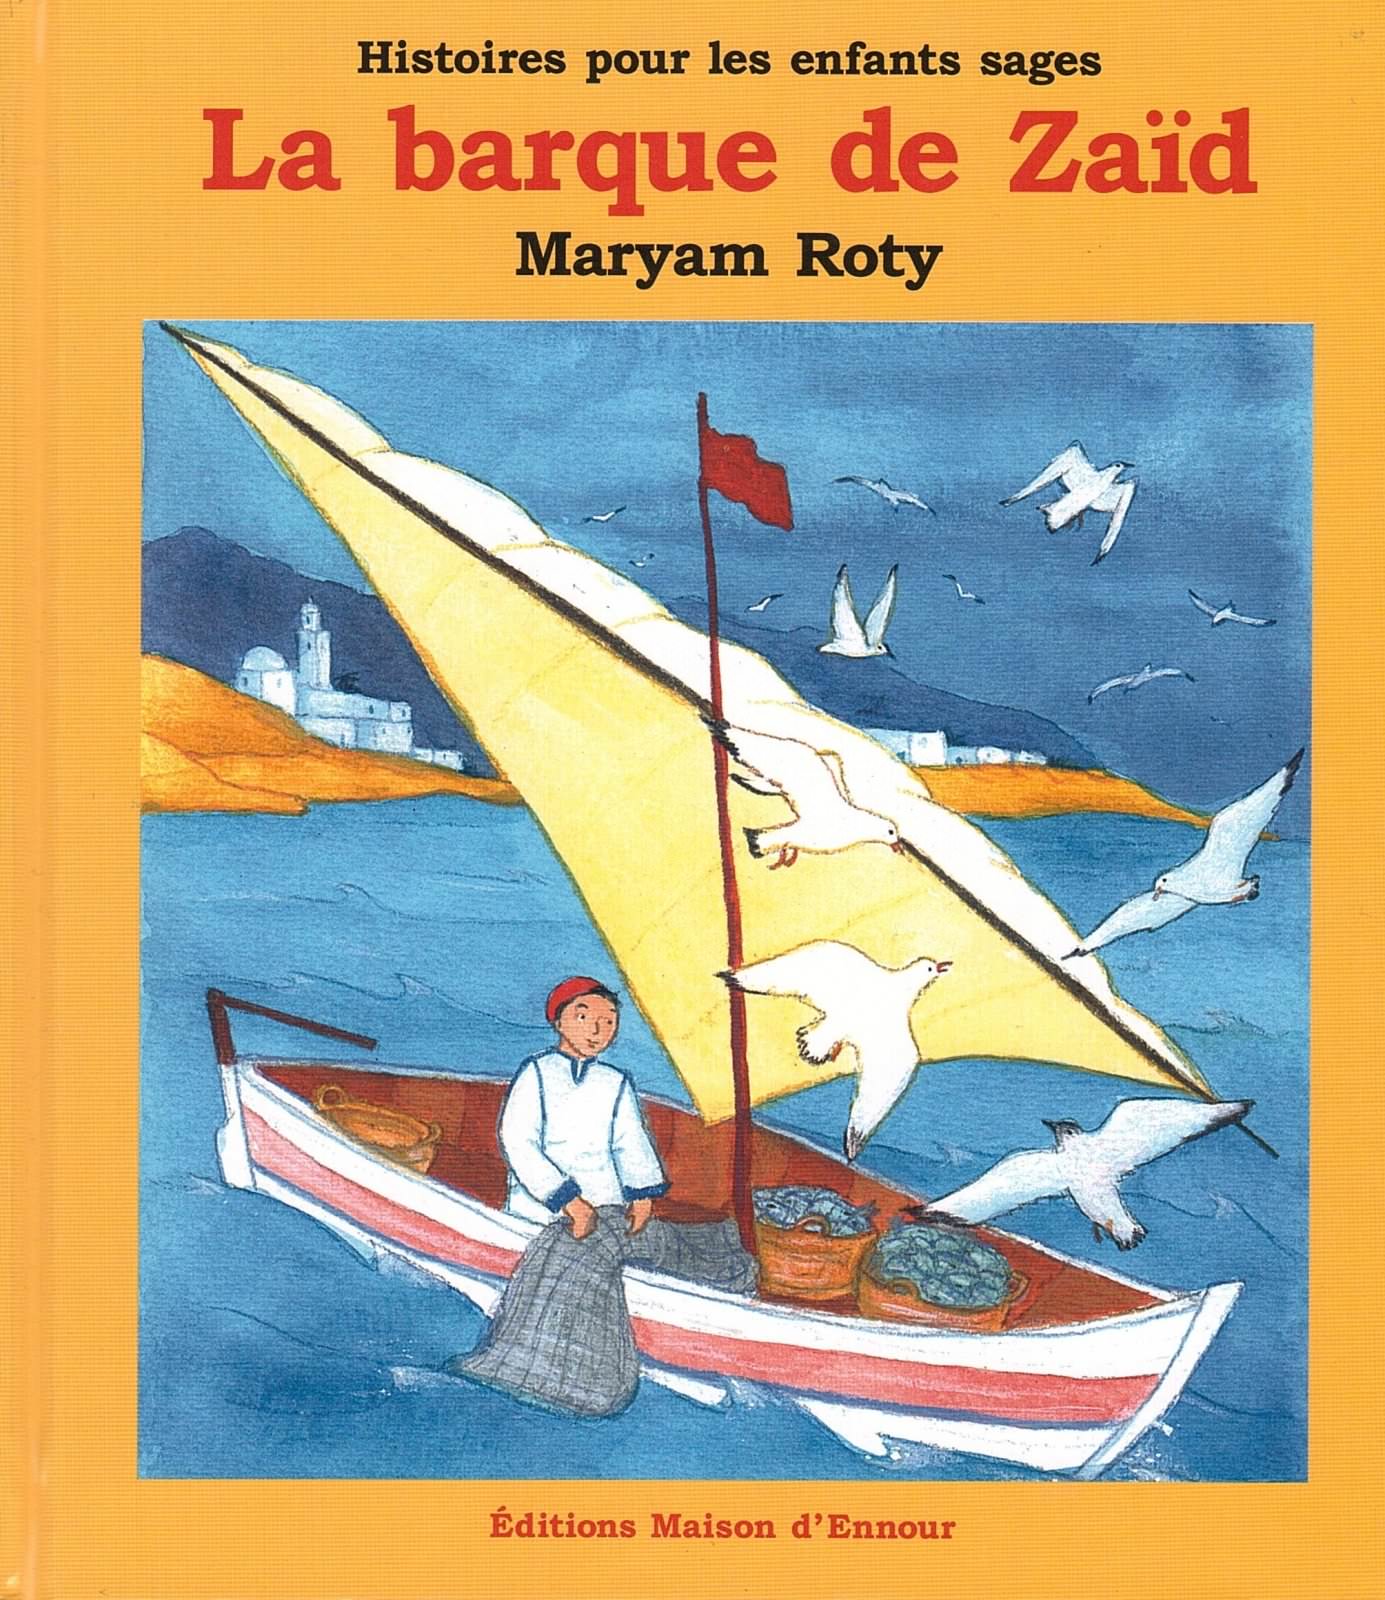 La barque de Zaïd Histoire pour les enfants sages Maryam Roty